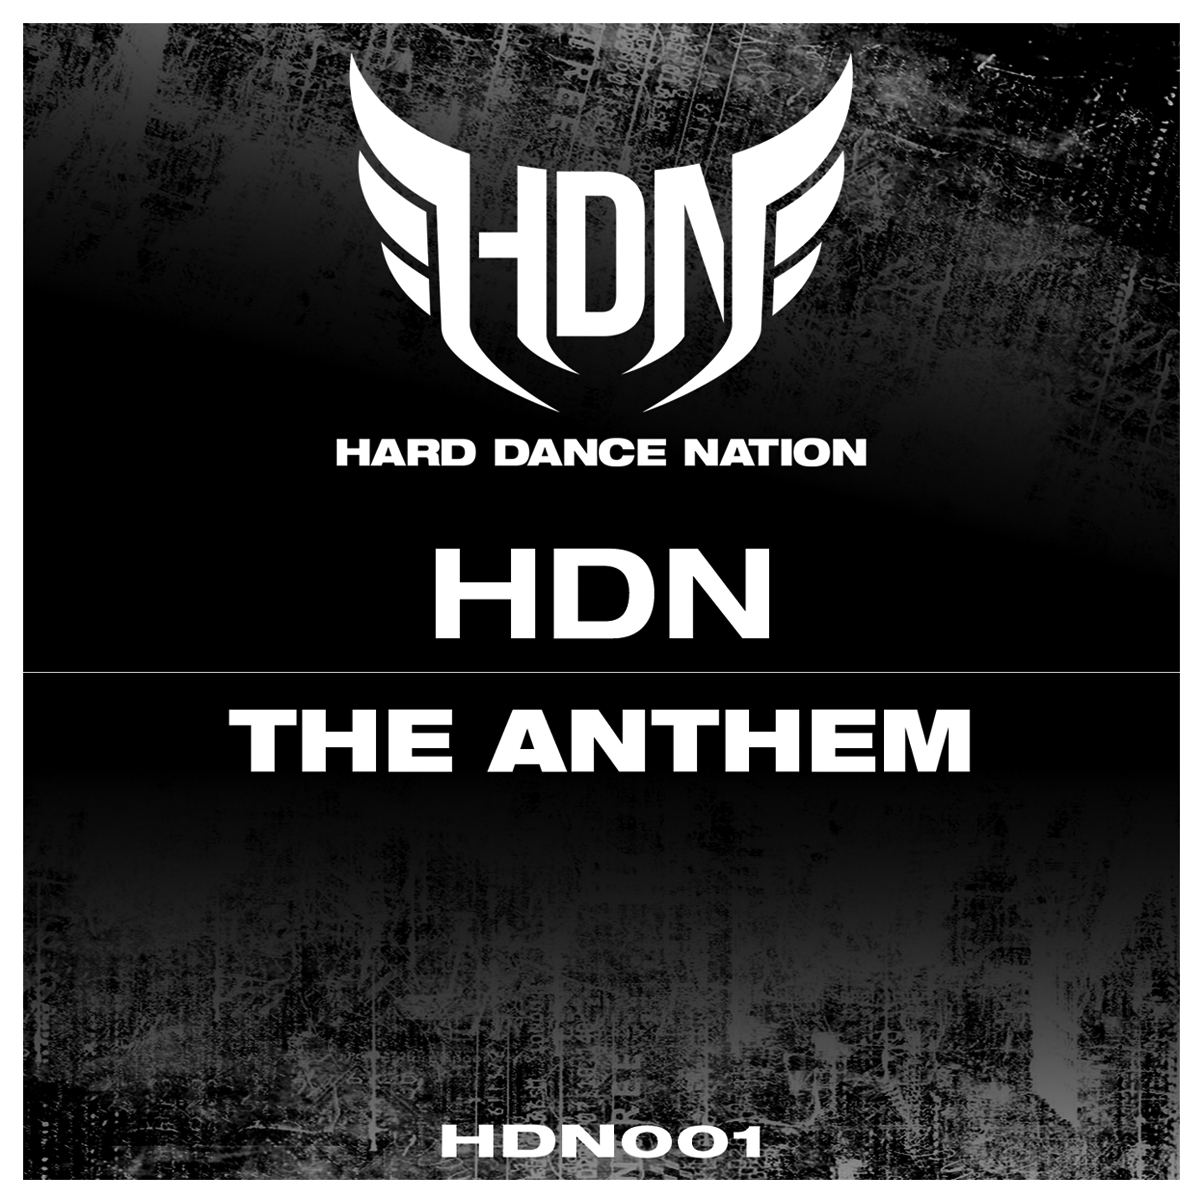 HDN001